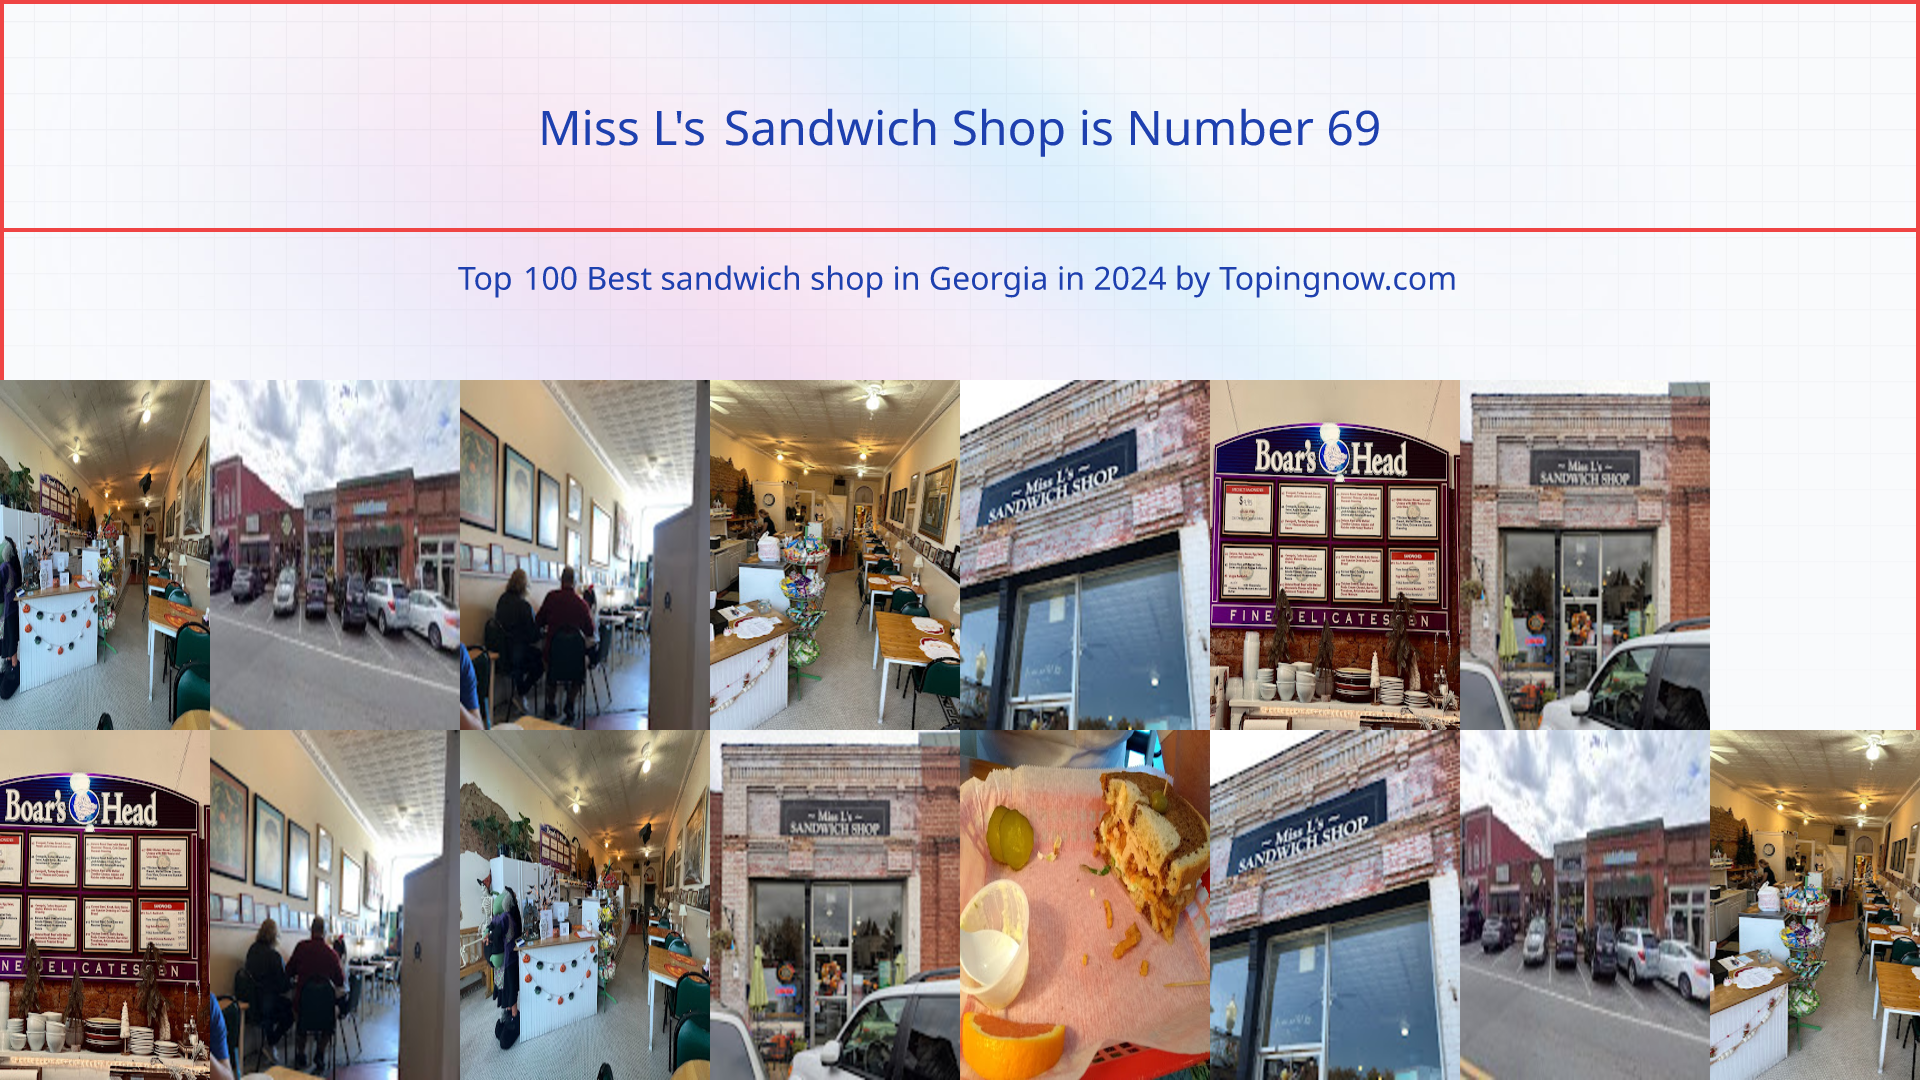 Miss L's Sandwich Shop: Top 100 Best sandwich shop in Georgia in 2024